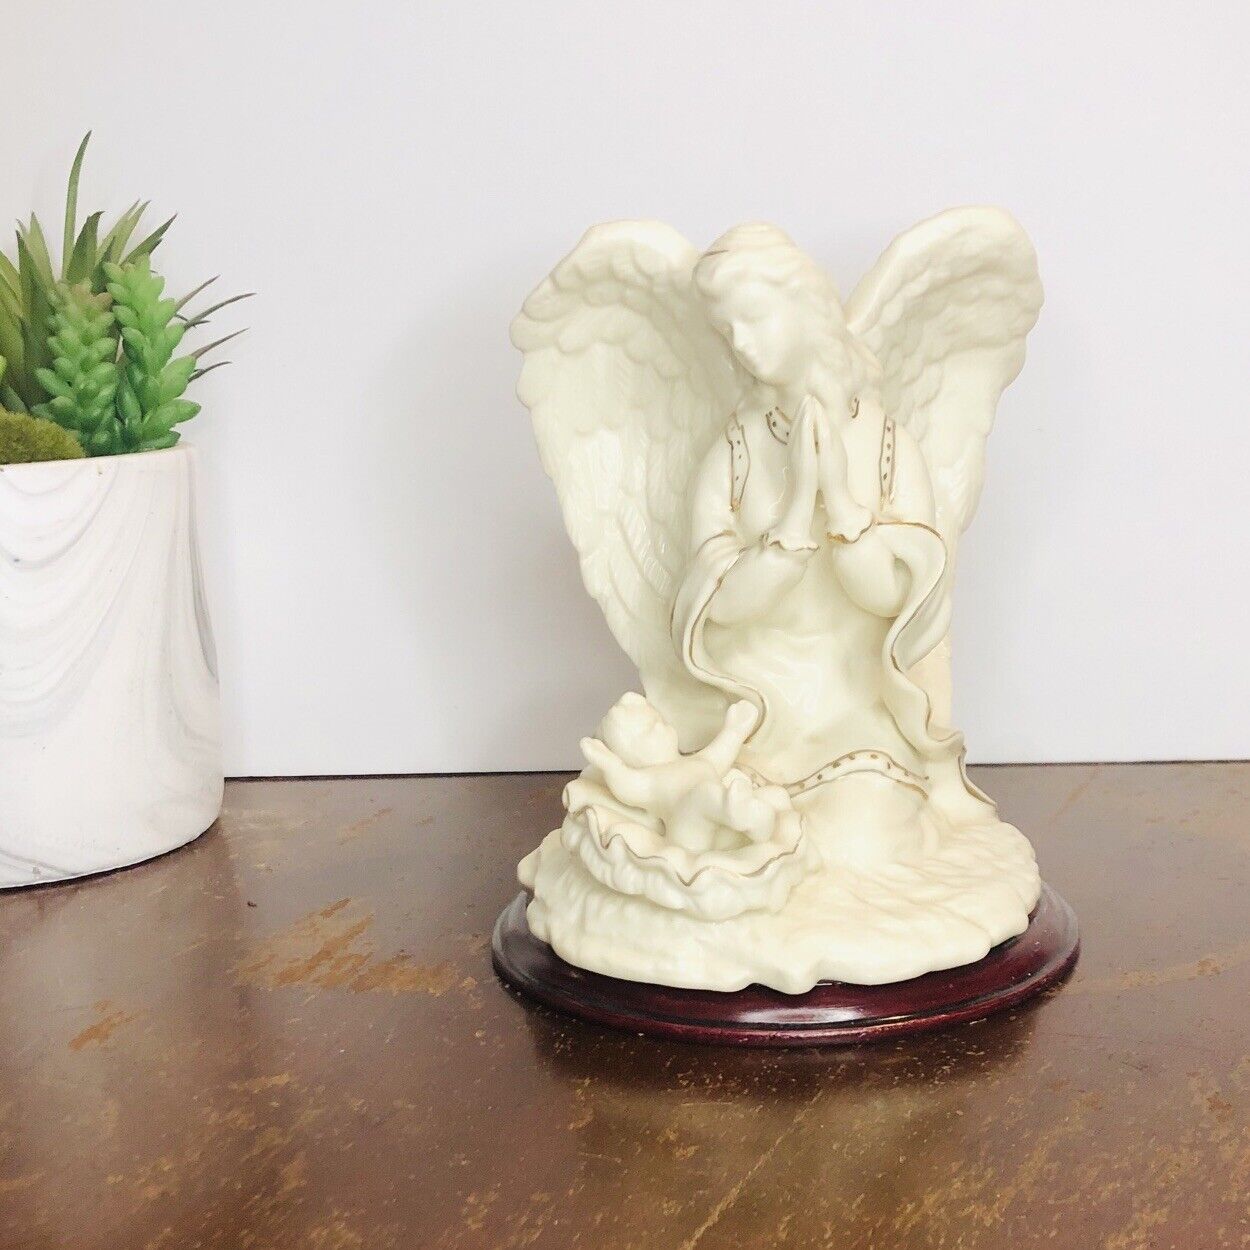 Angel Guardian Figurine Praying Over Baby Boy Jesus Porcelain Vintage